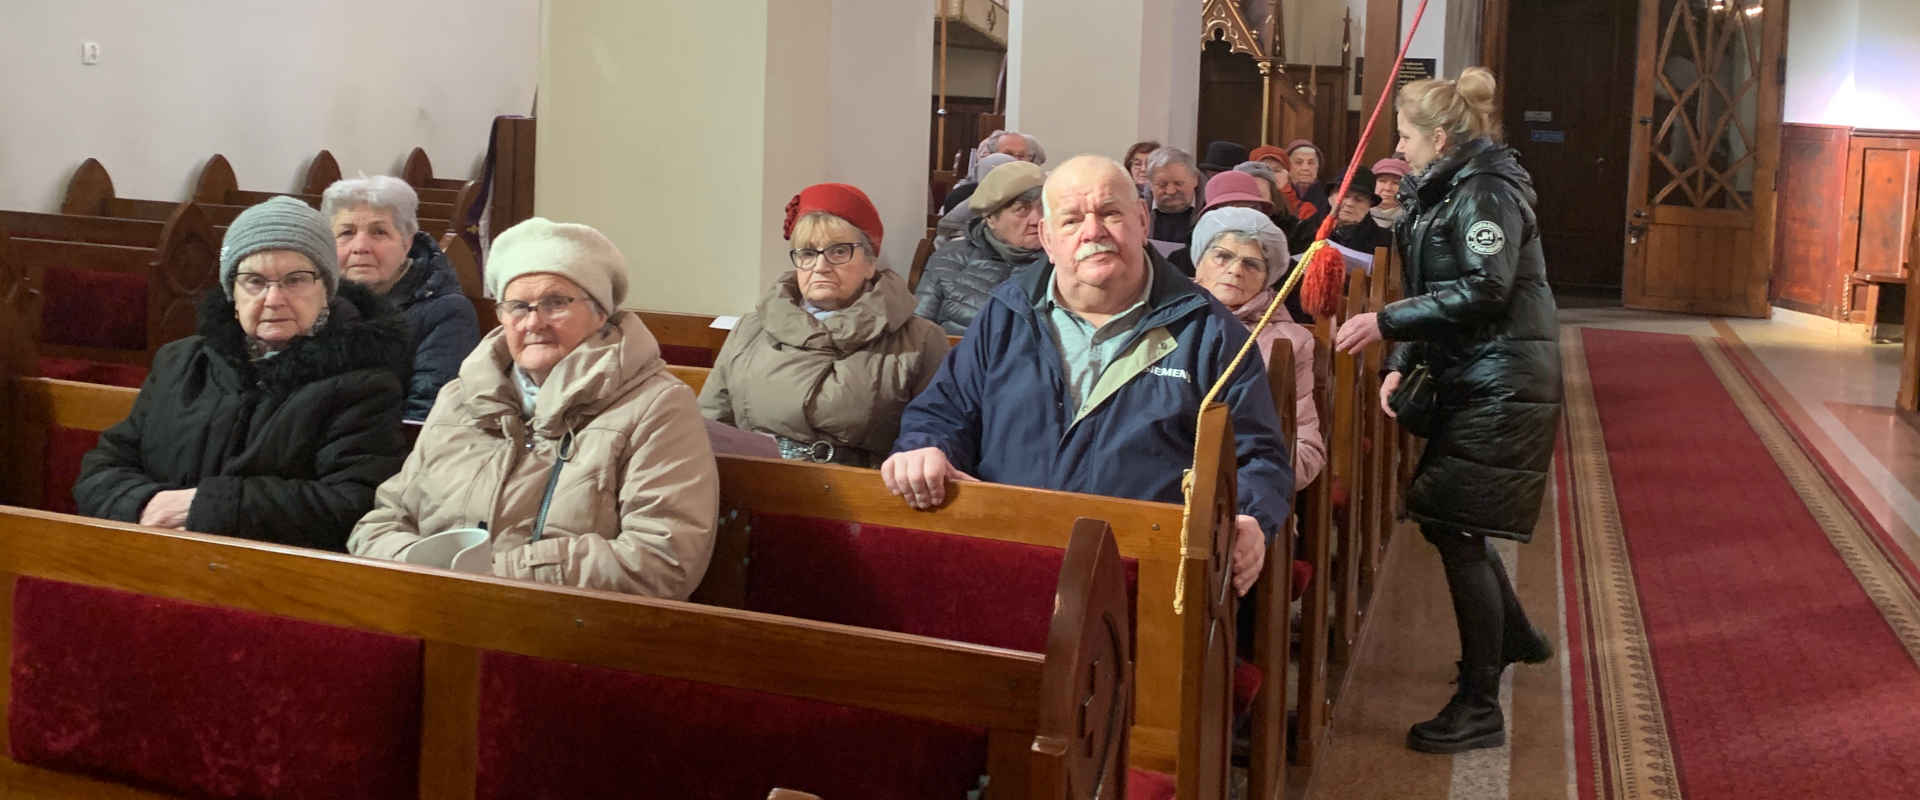 Zdjęcie grupowe seniorów w ławkach kościoła w Trzcianie